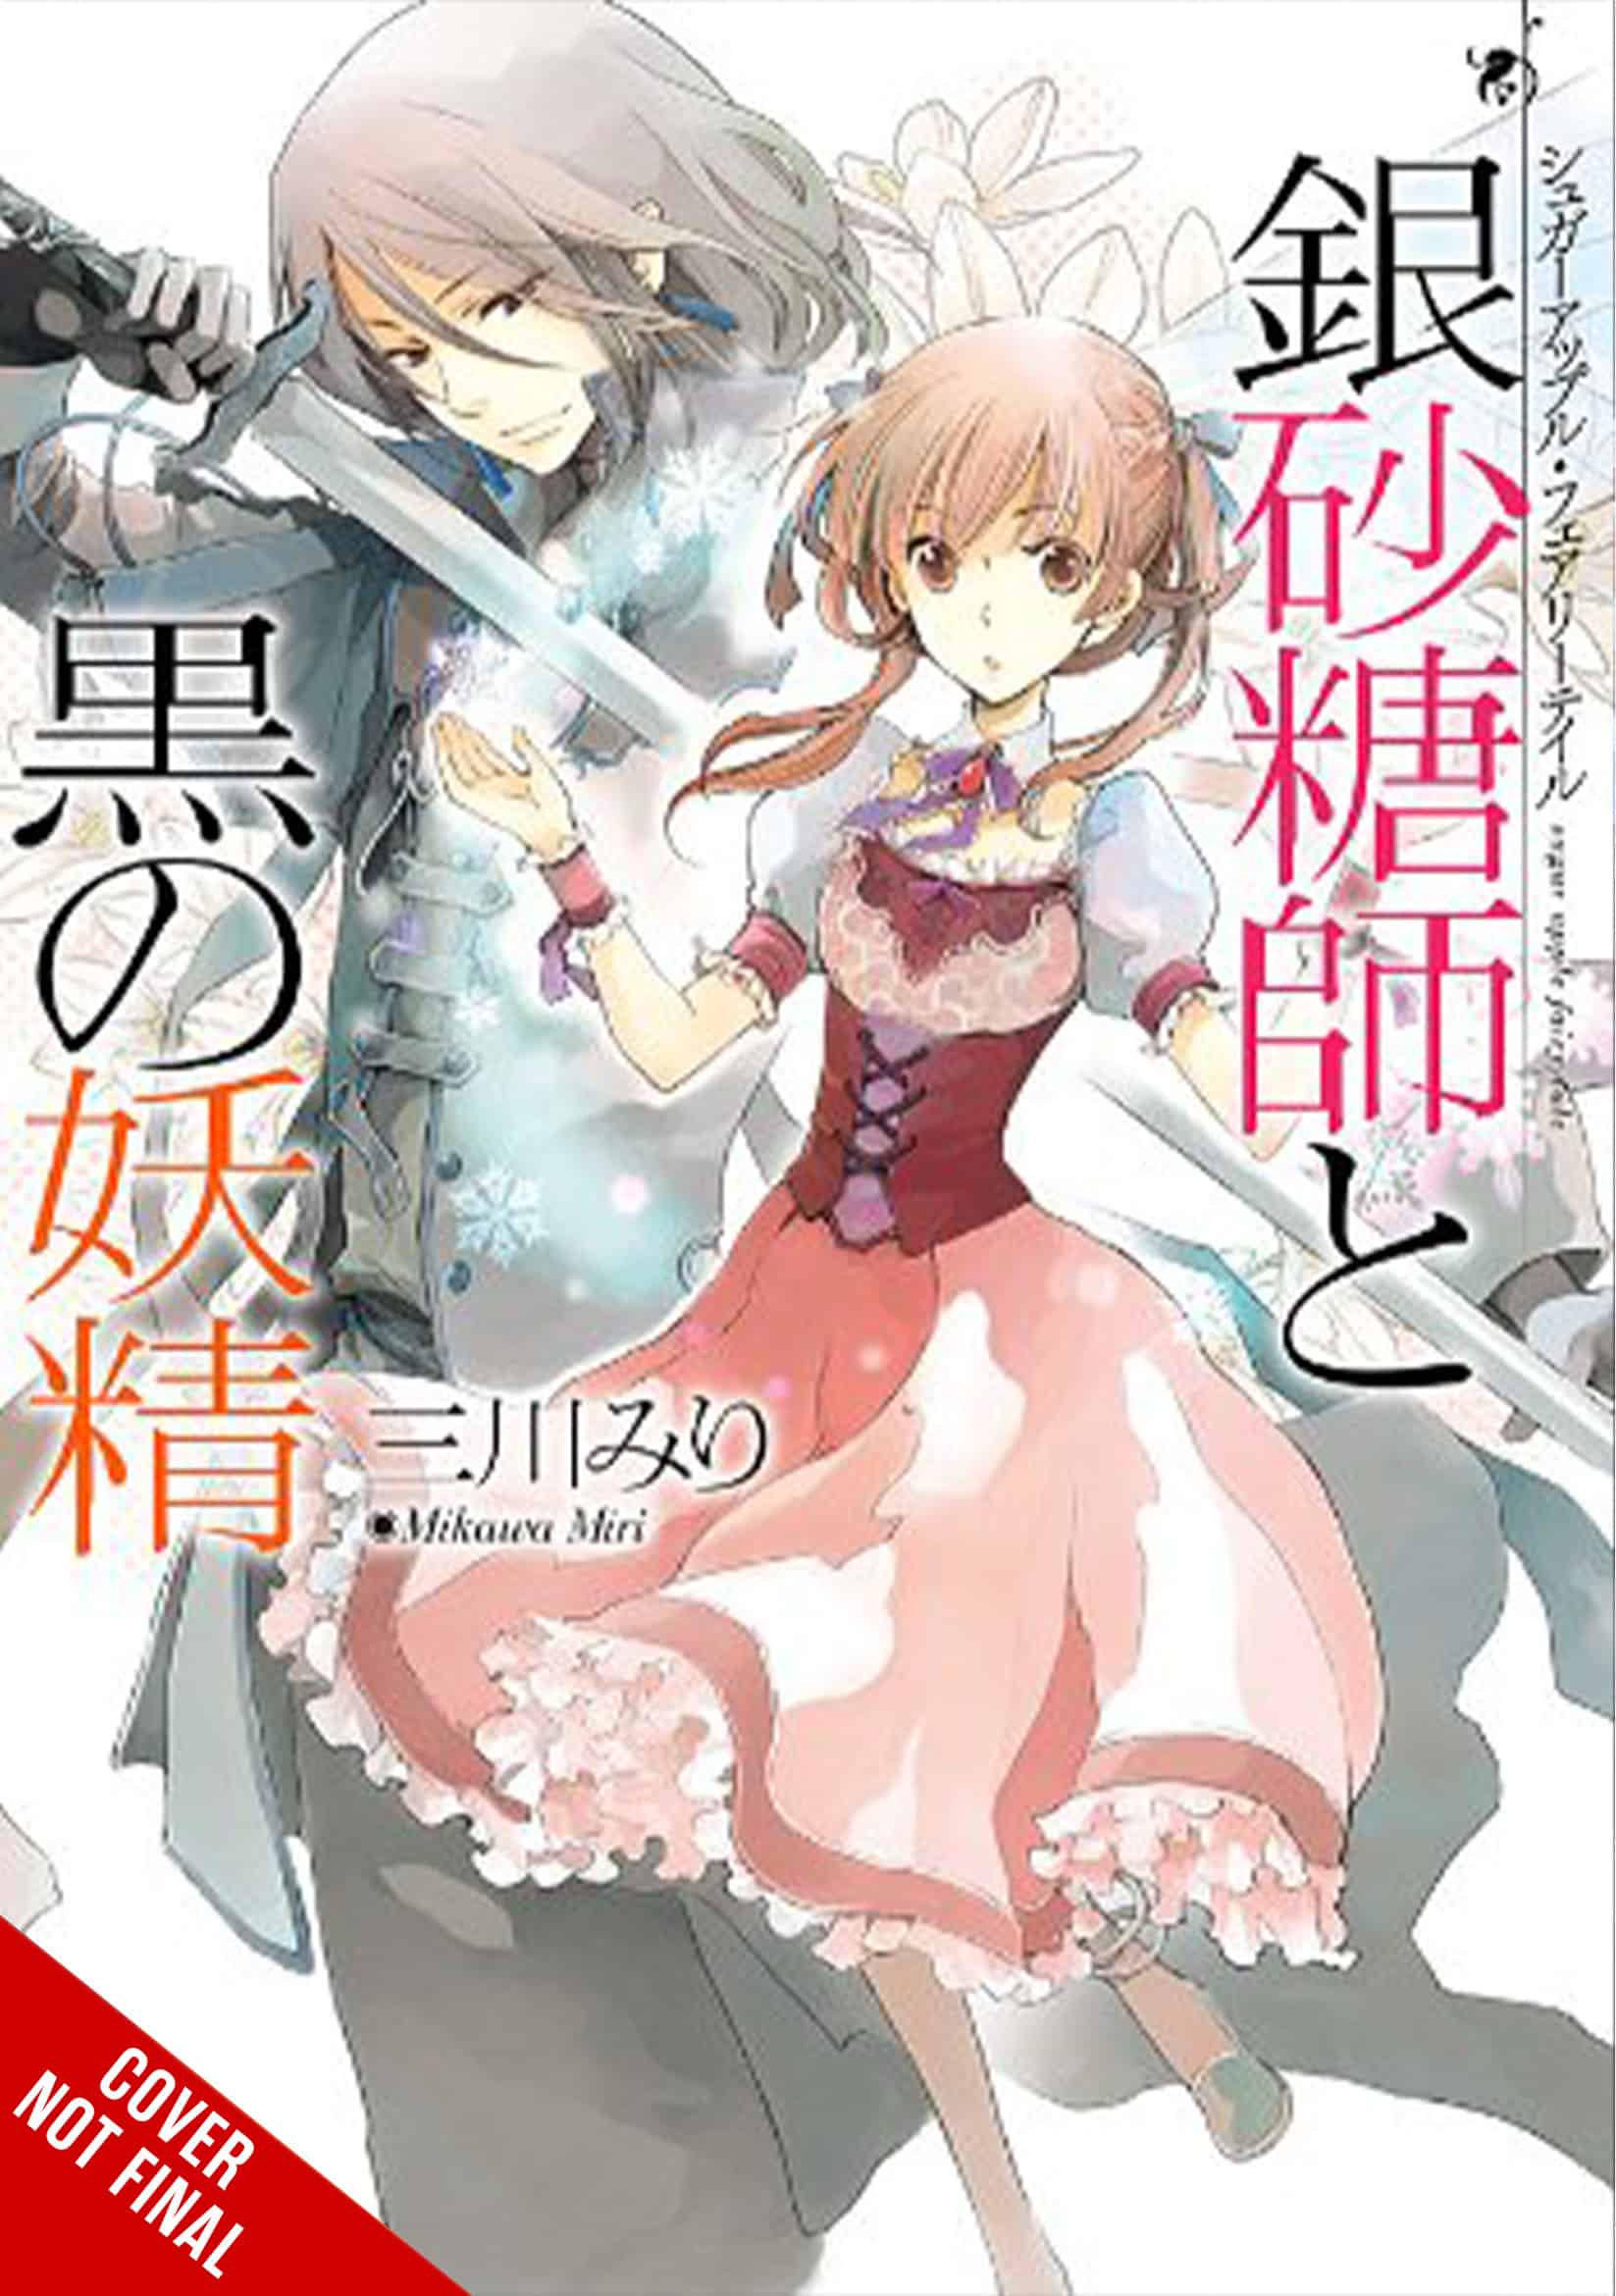 Yen Press to publish manga adaptation of 86—EIGHTY-SIX • AIPT